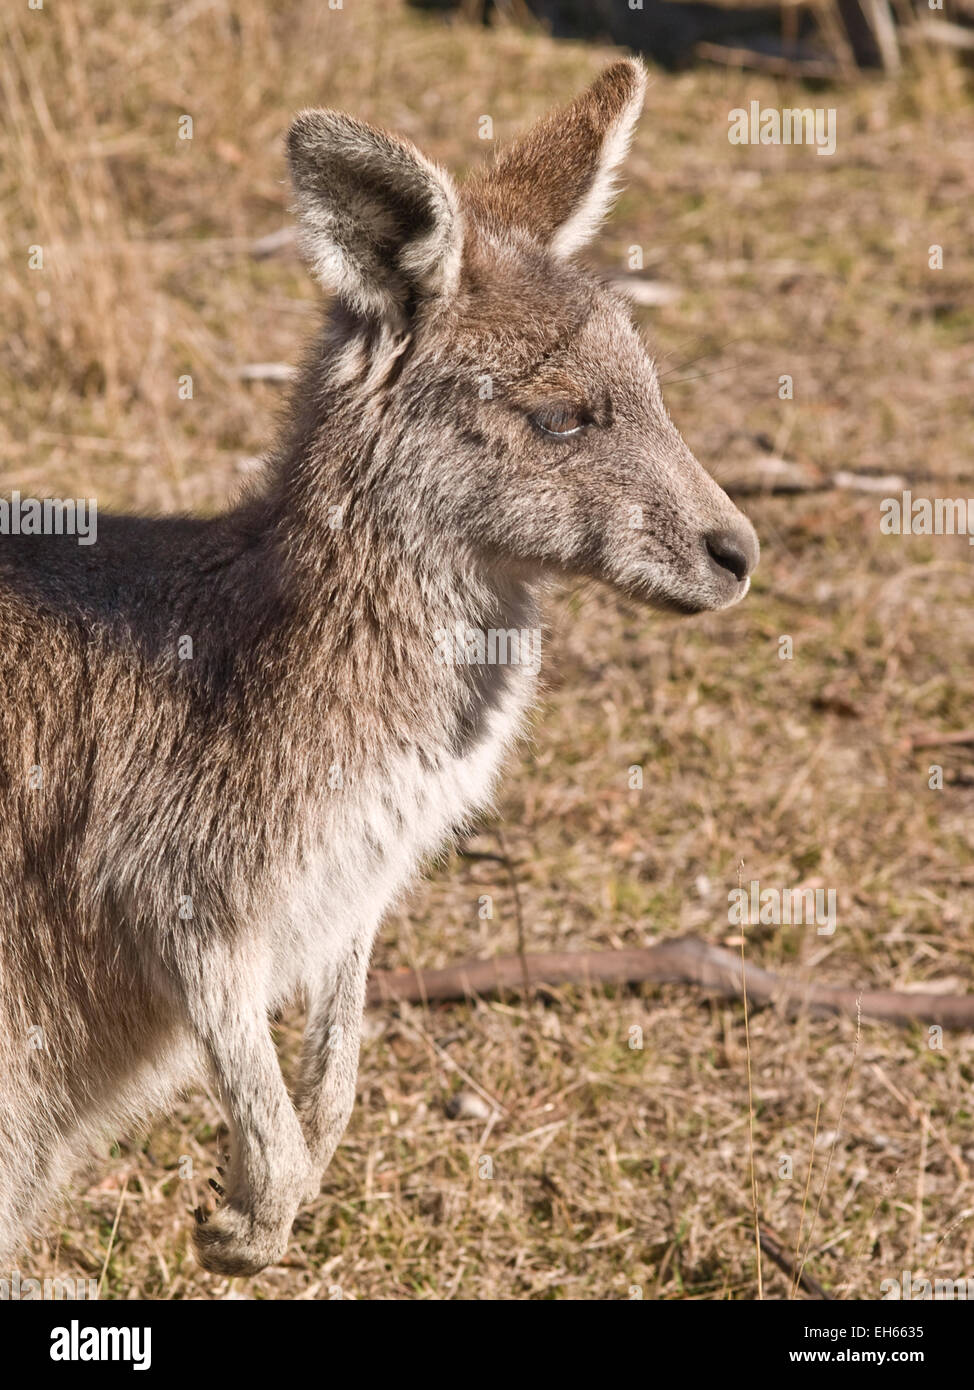 Australia: Female Eastern Grey kangaroo (Macropus gigenteus), Snowy Mountains, NSW Stock Photo